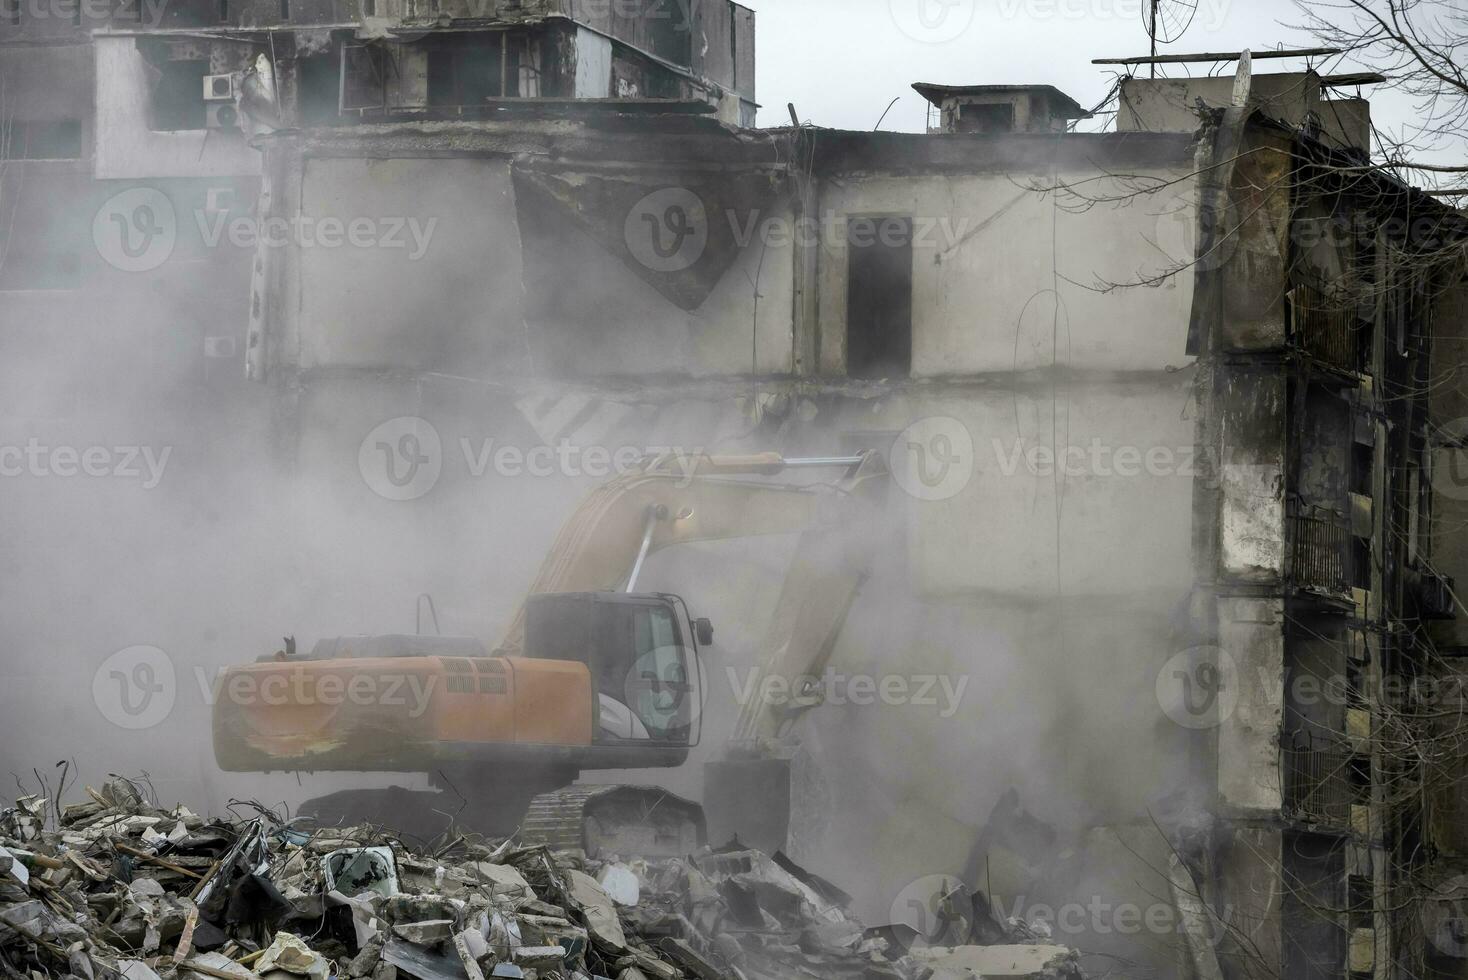 rivning av förstörd och bränd hus i ukraina under de krig foto